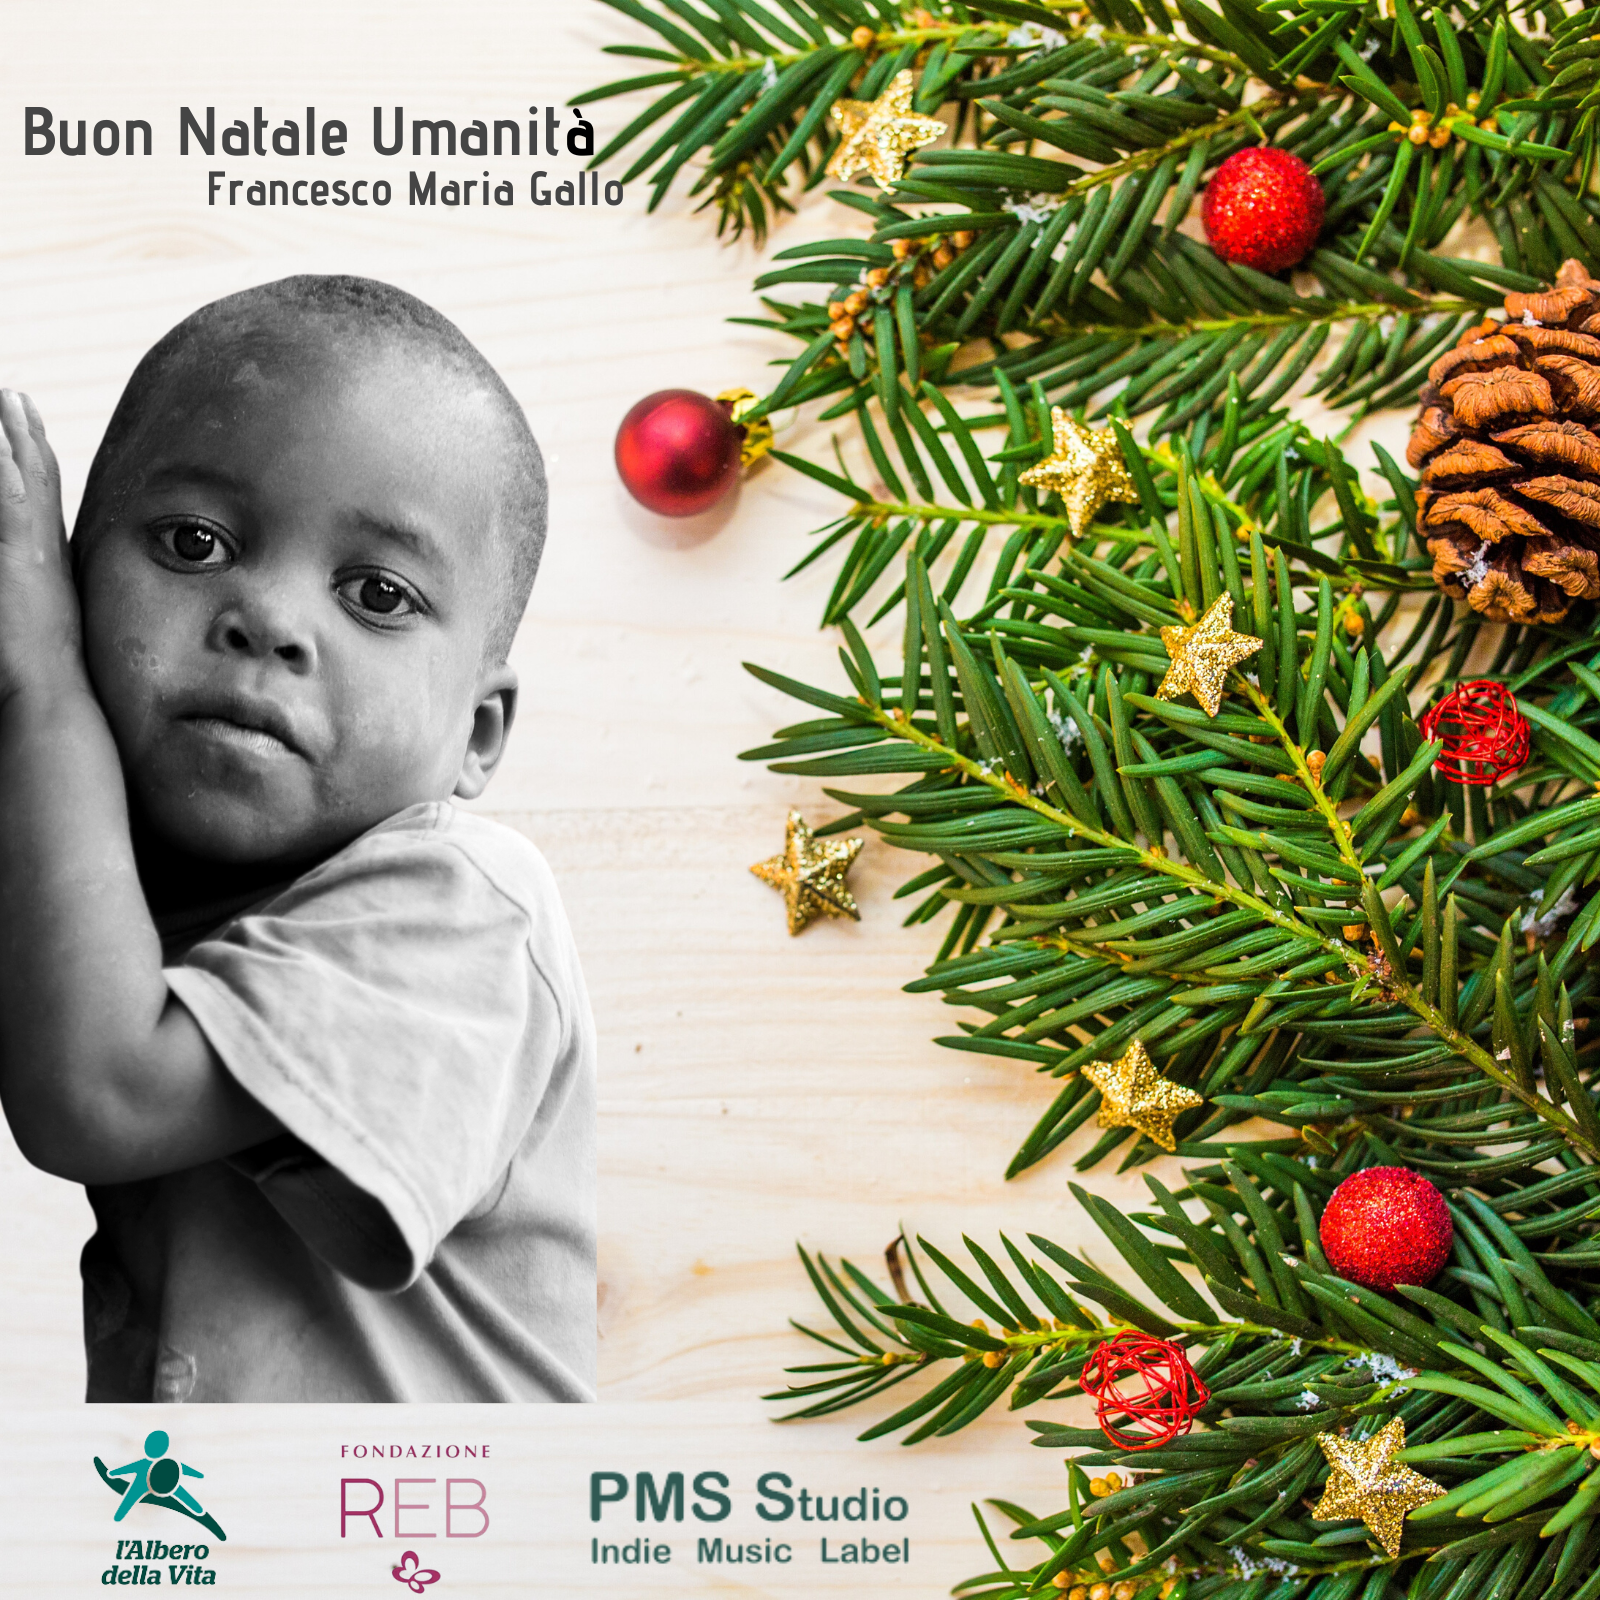 Buon Natale Umanità l’Albero della Vita e Fondazione REB in occasione della Giornata Mondiale dei diritti dei Bambini